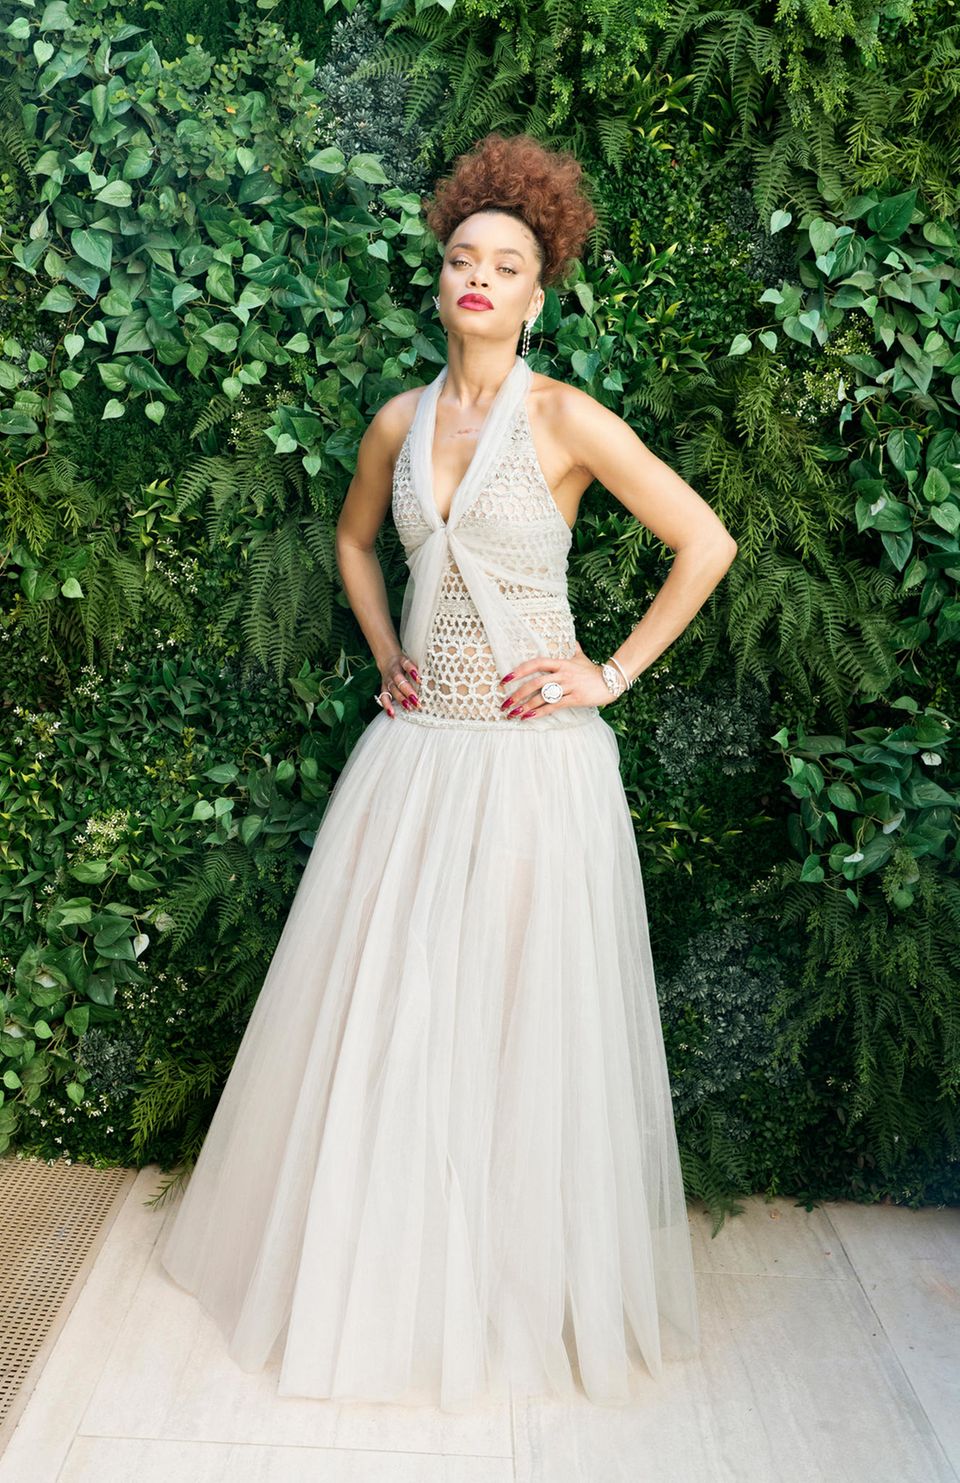 Musikerin Andra Day ist im verträumten Glamour-Look von Chanel eine wahre Augenweide.